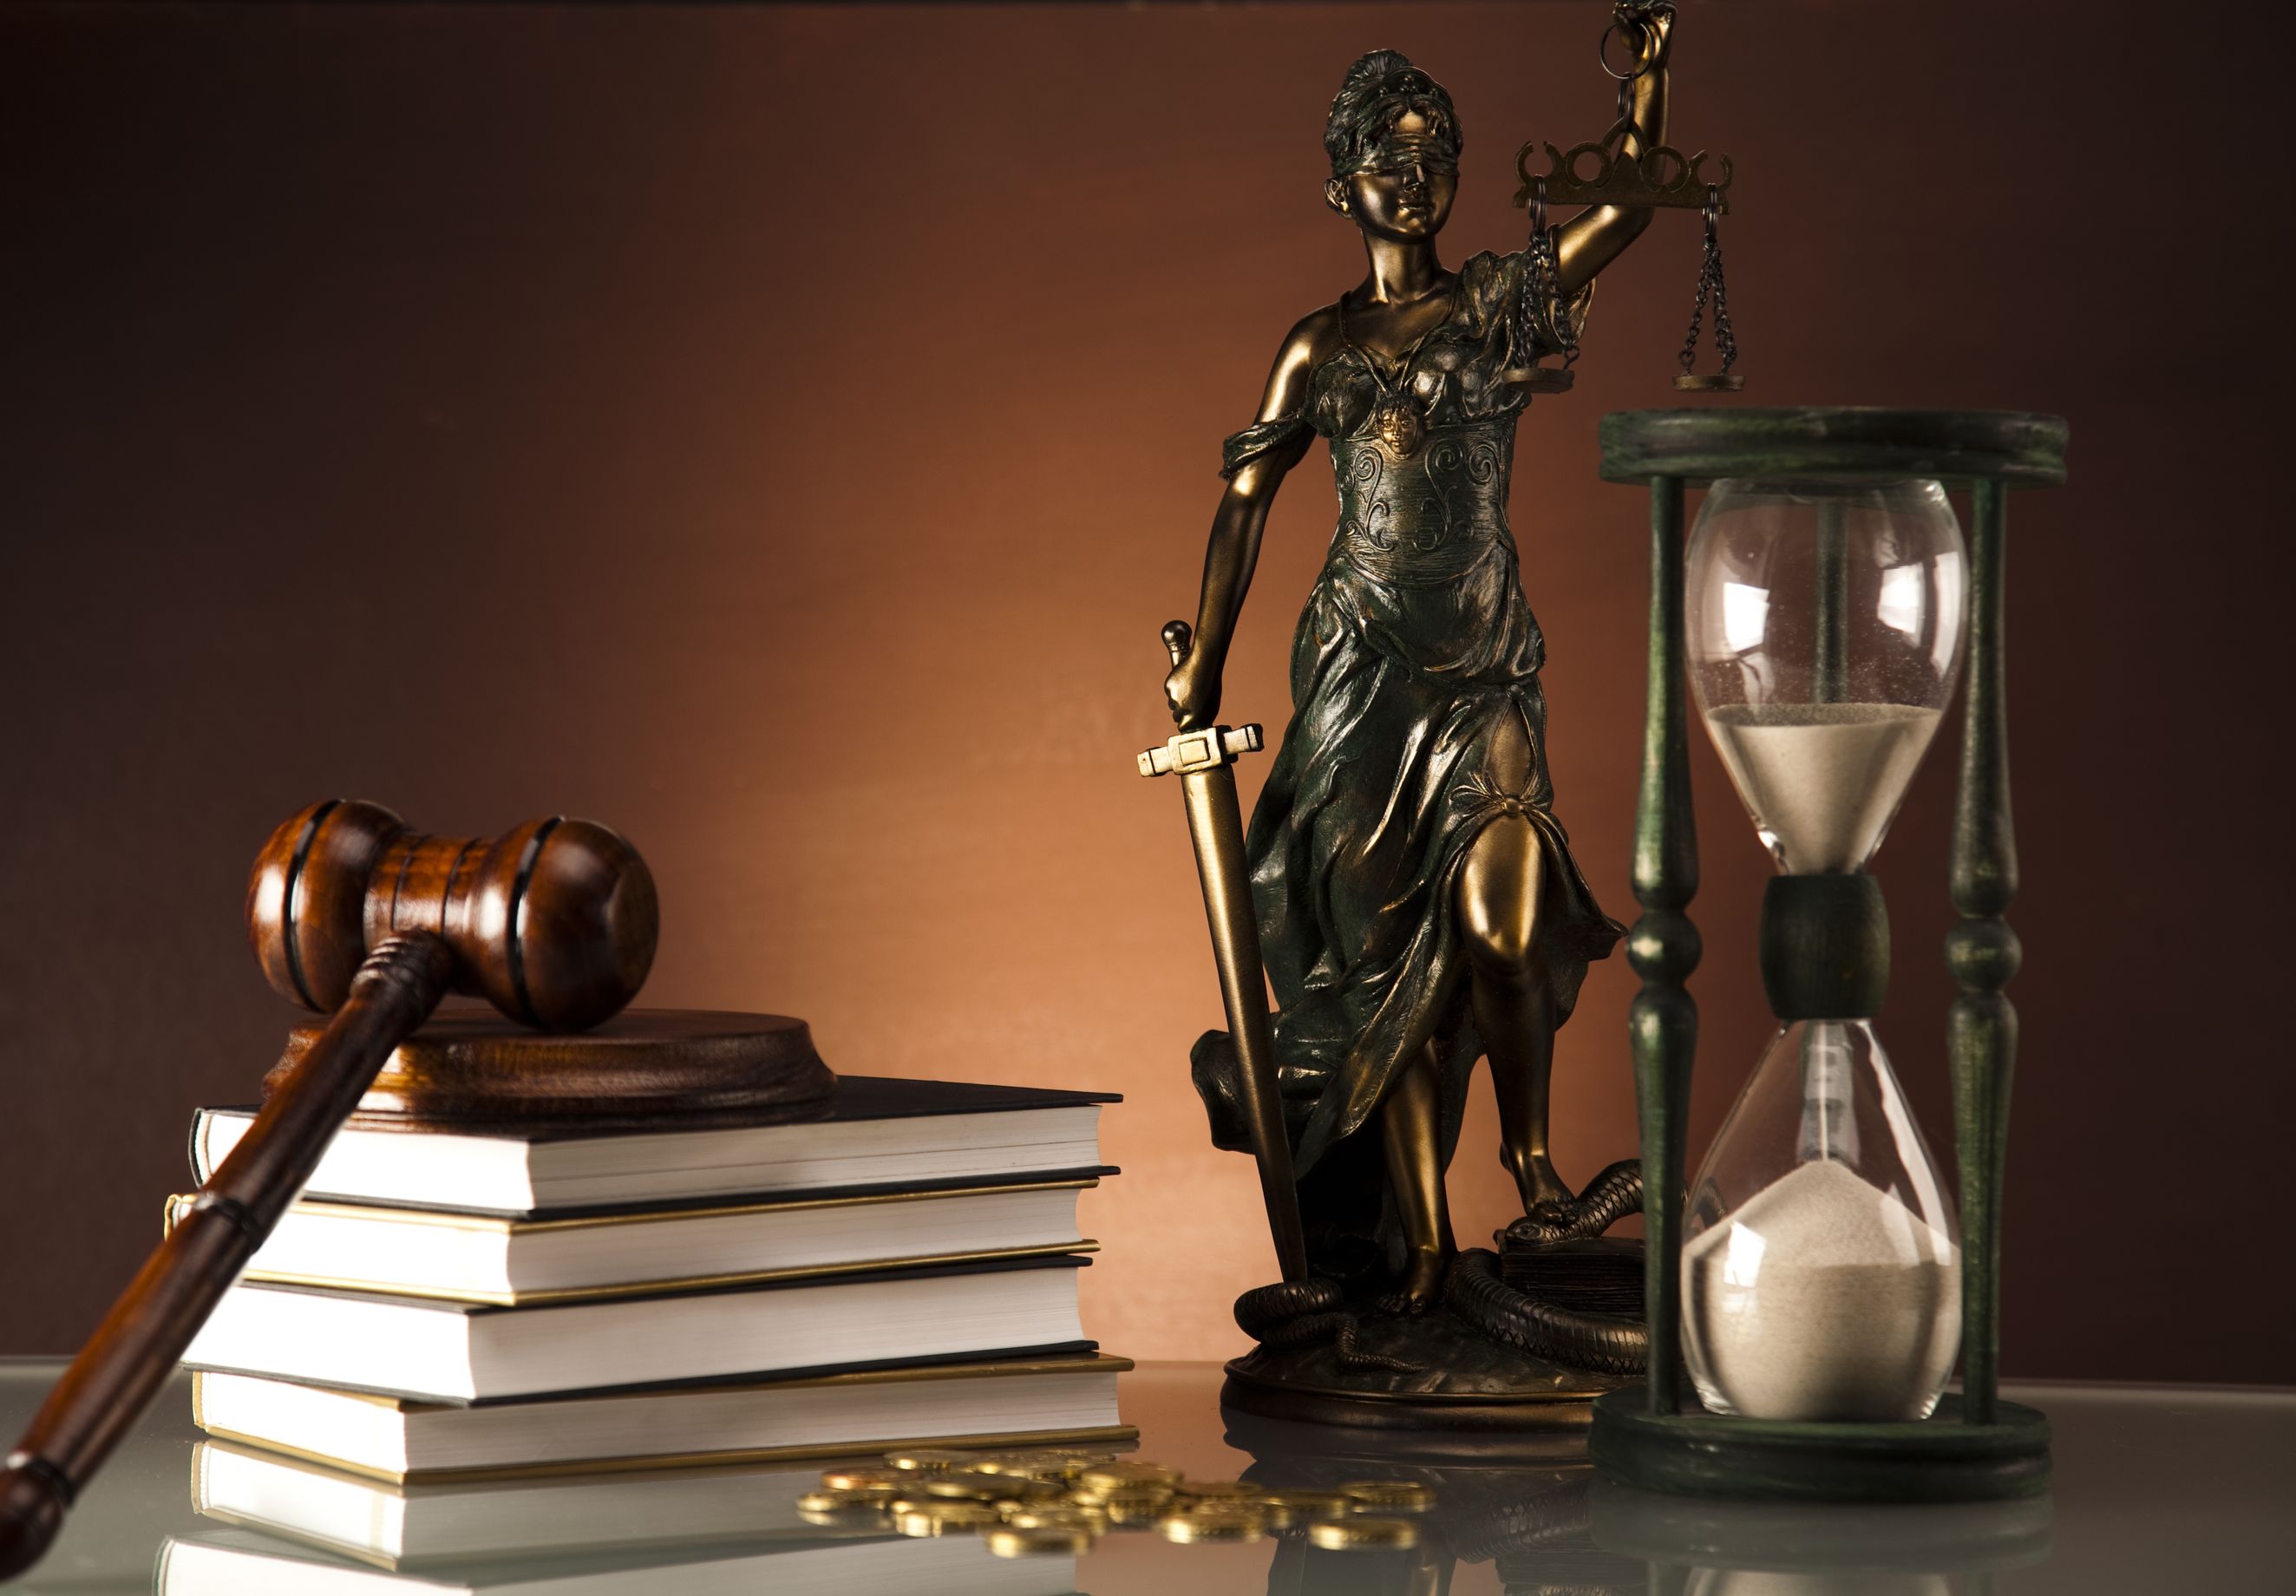 Адвокаты оказывают юридическую помощь по всем категориям уголовных дел любой сложности.
Адвокаты осуществляют защиту:
--на стадии следственной проверки, когда уголовное дело еще не возбуждено, а Вас задерживают или берут с Вас объяснения; 